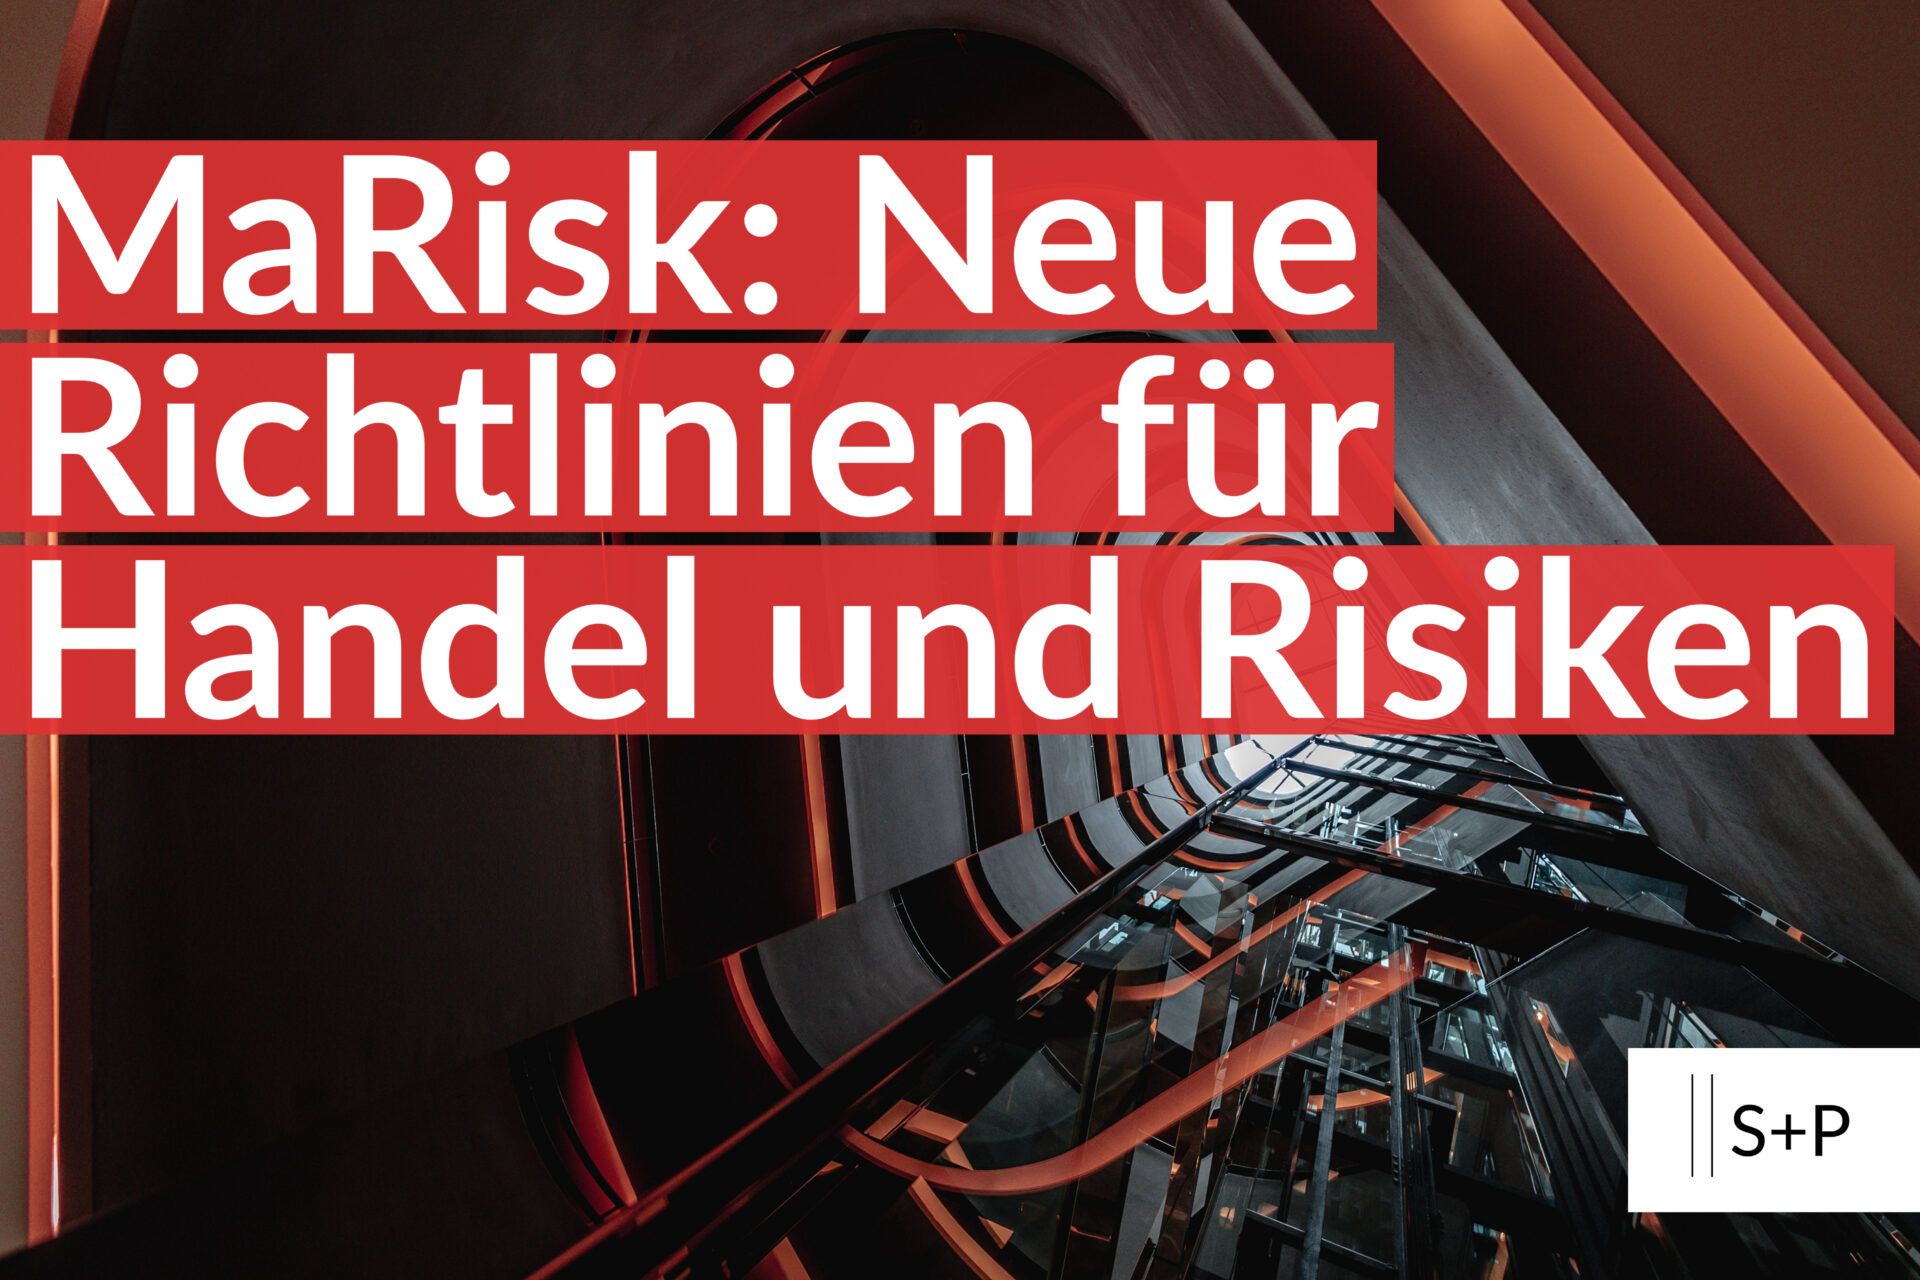 MaRisk: Neue Richtlinien für Handel und Risiken